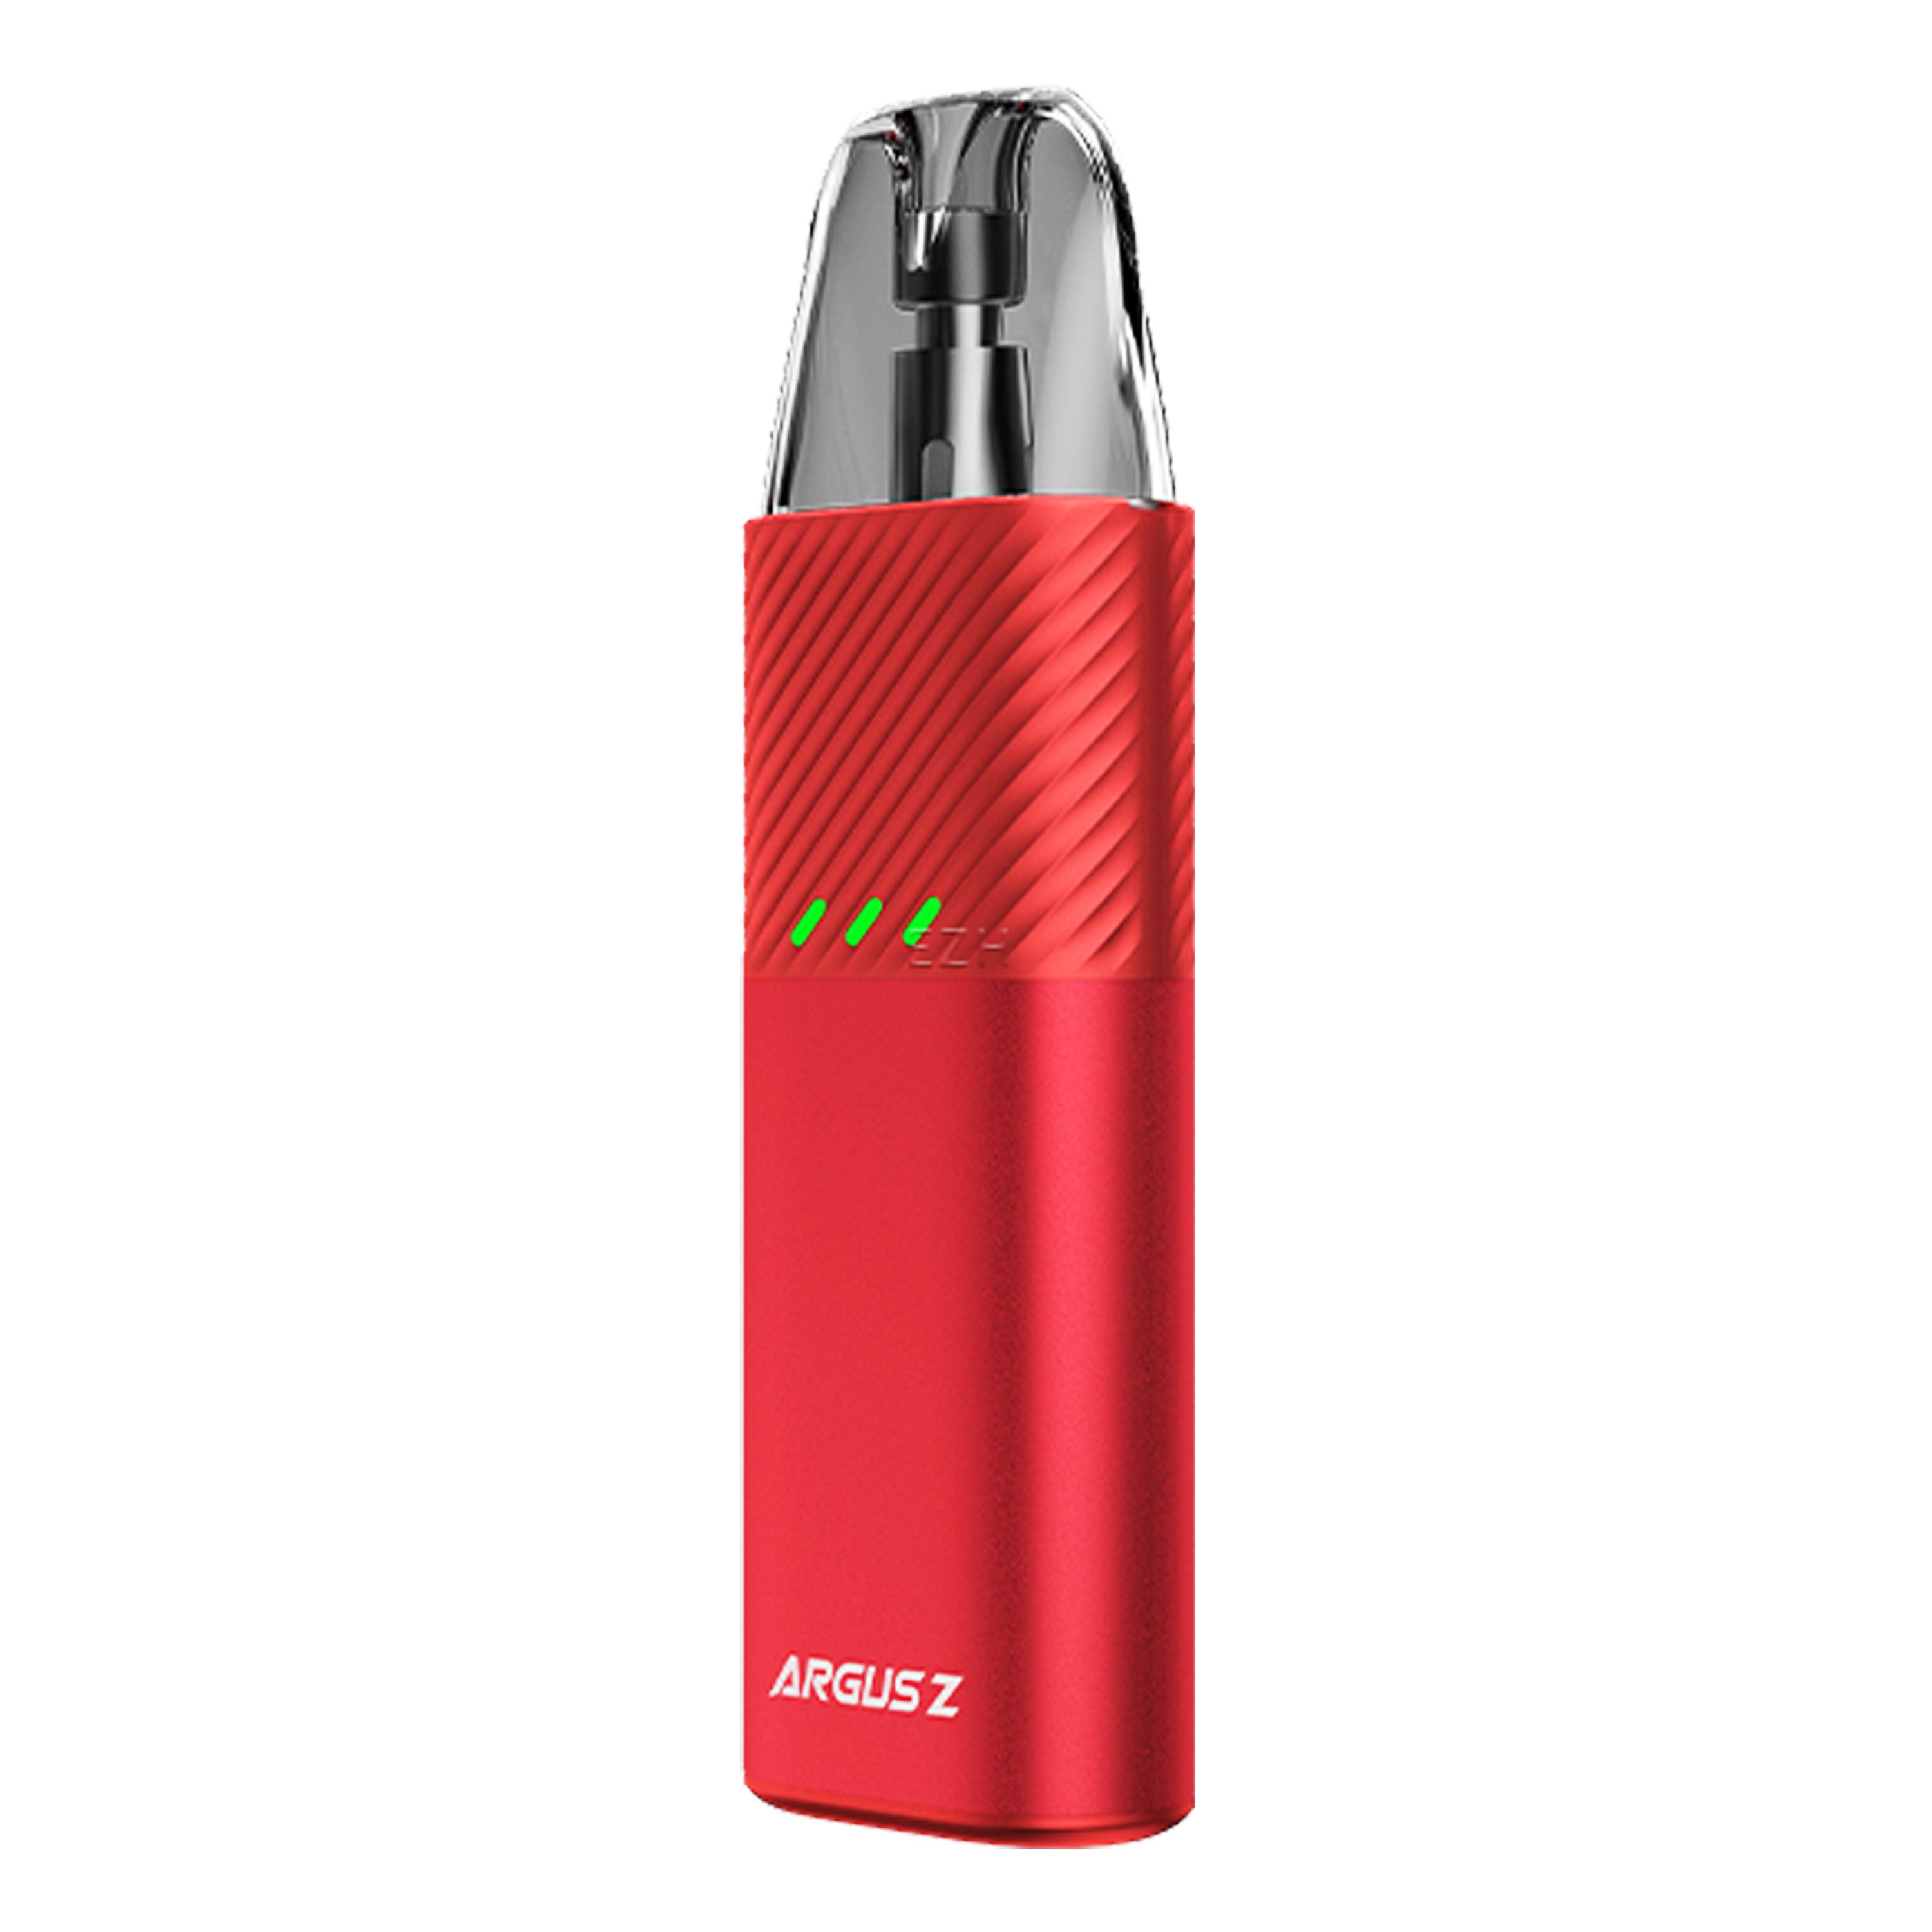 Voopoo - Argus Z Kit (2 ml) 900 mAh - E-Zigarette